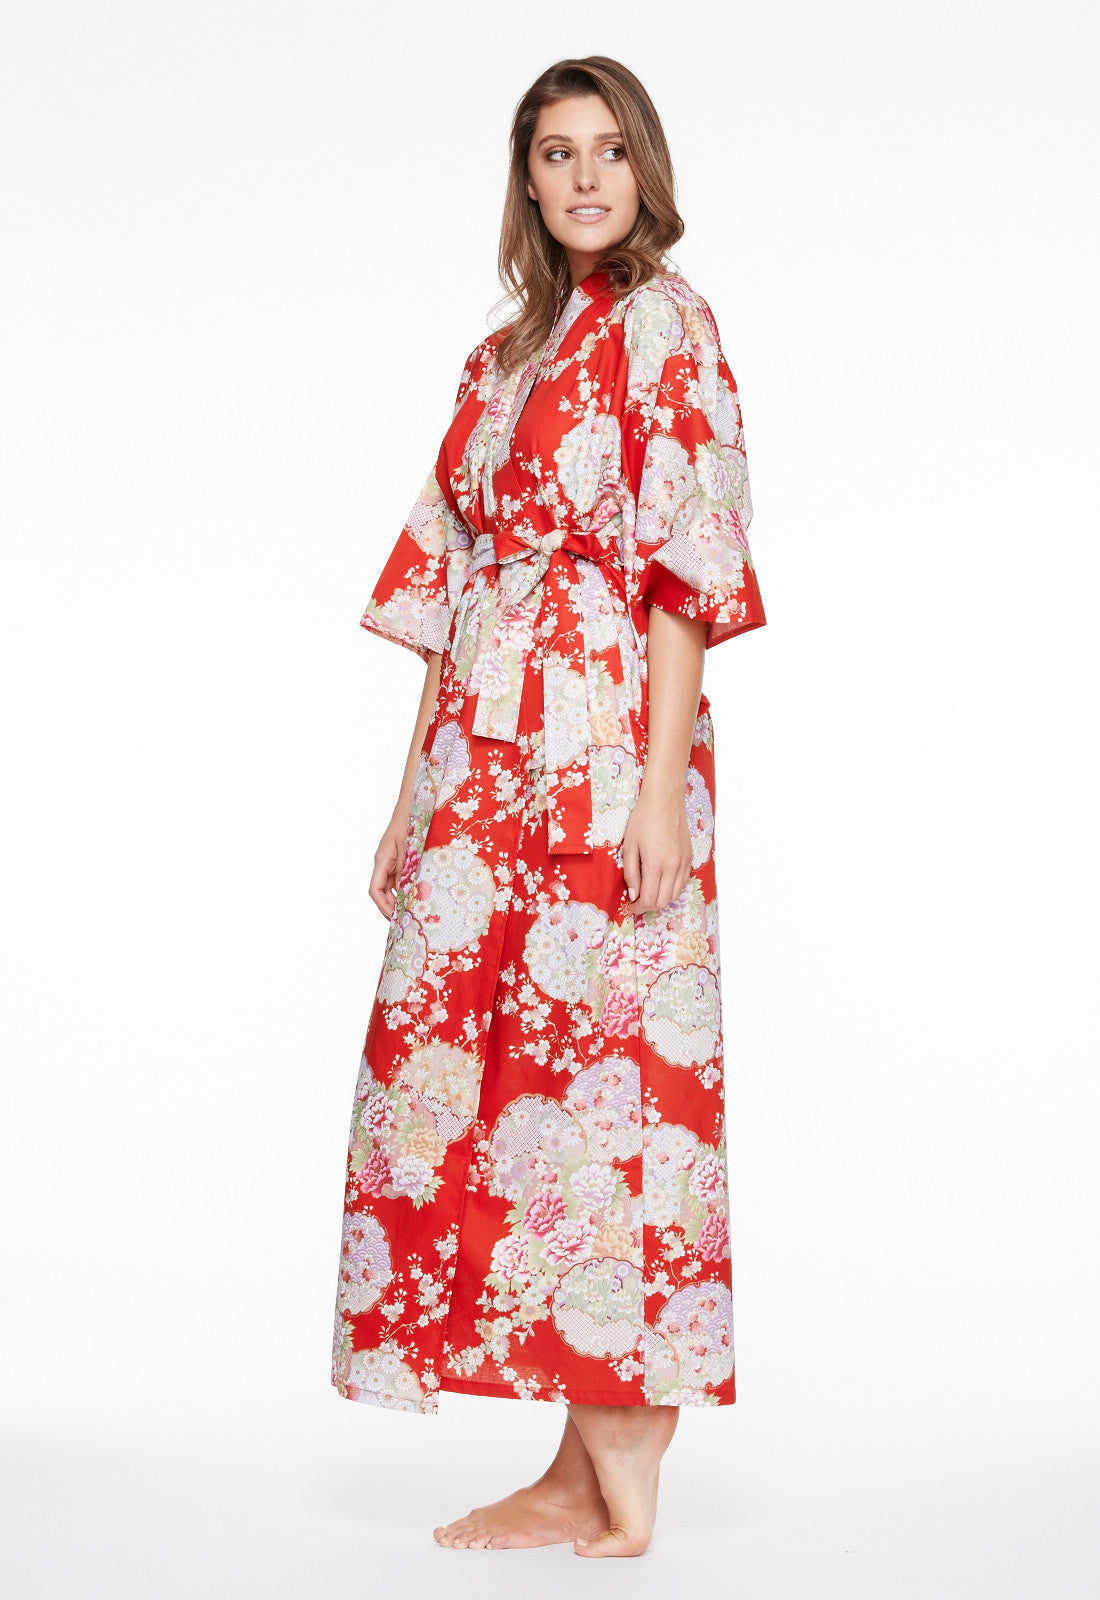 Cotton Kimono Robe Australia for Women – Beautiful Robes